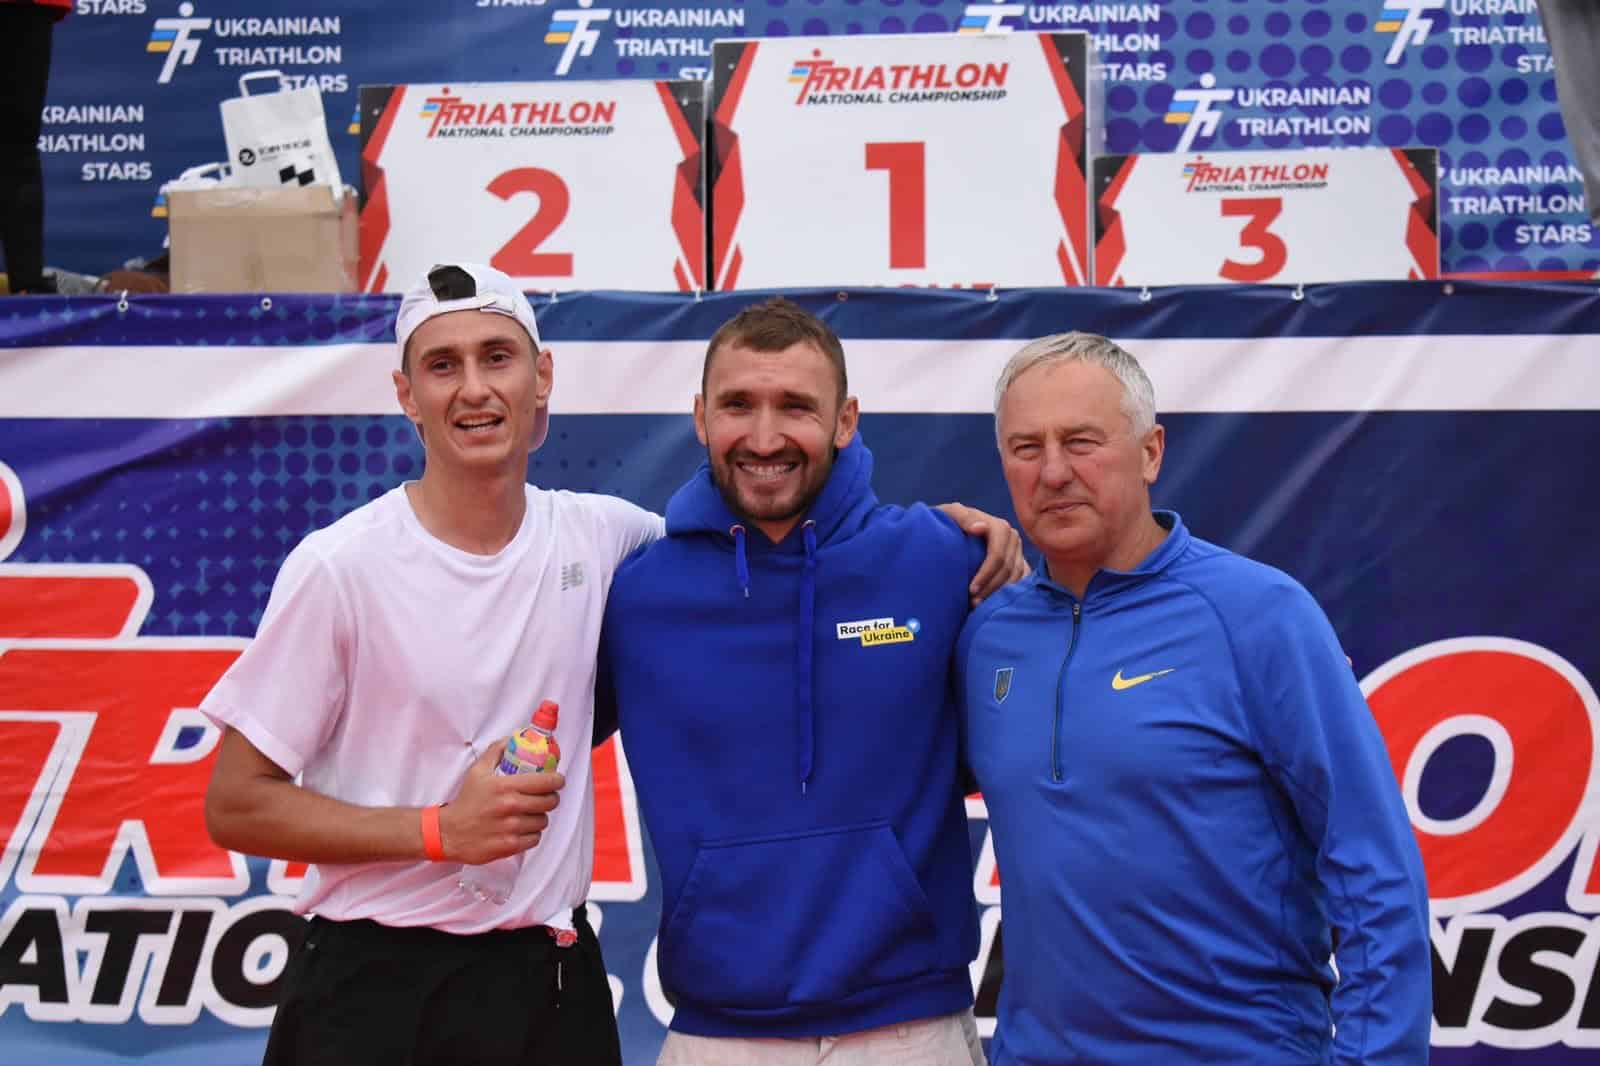 Переяславці стали бронзовими призерами Чемпіонату України з триатлону